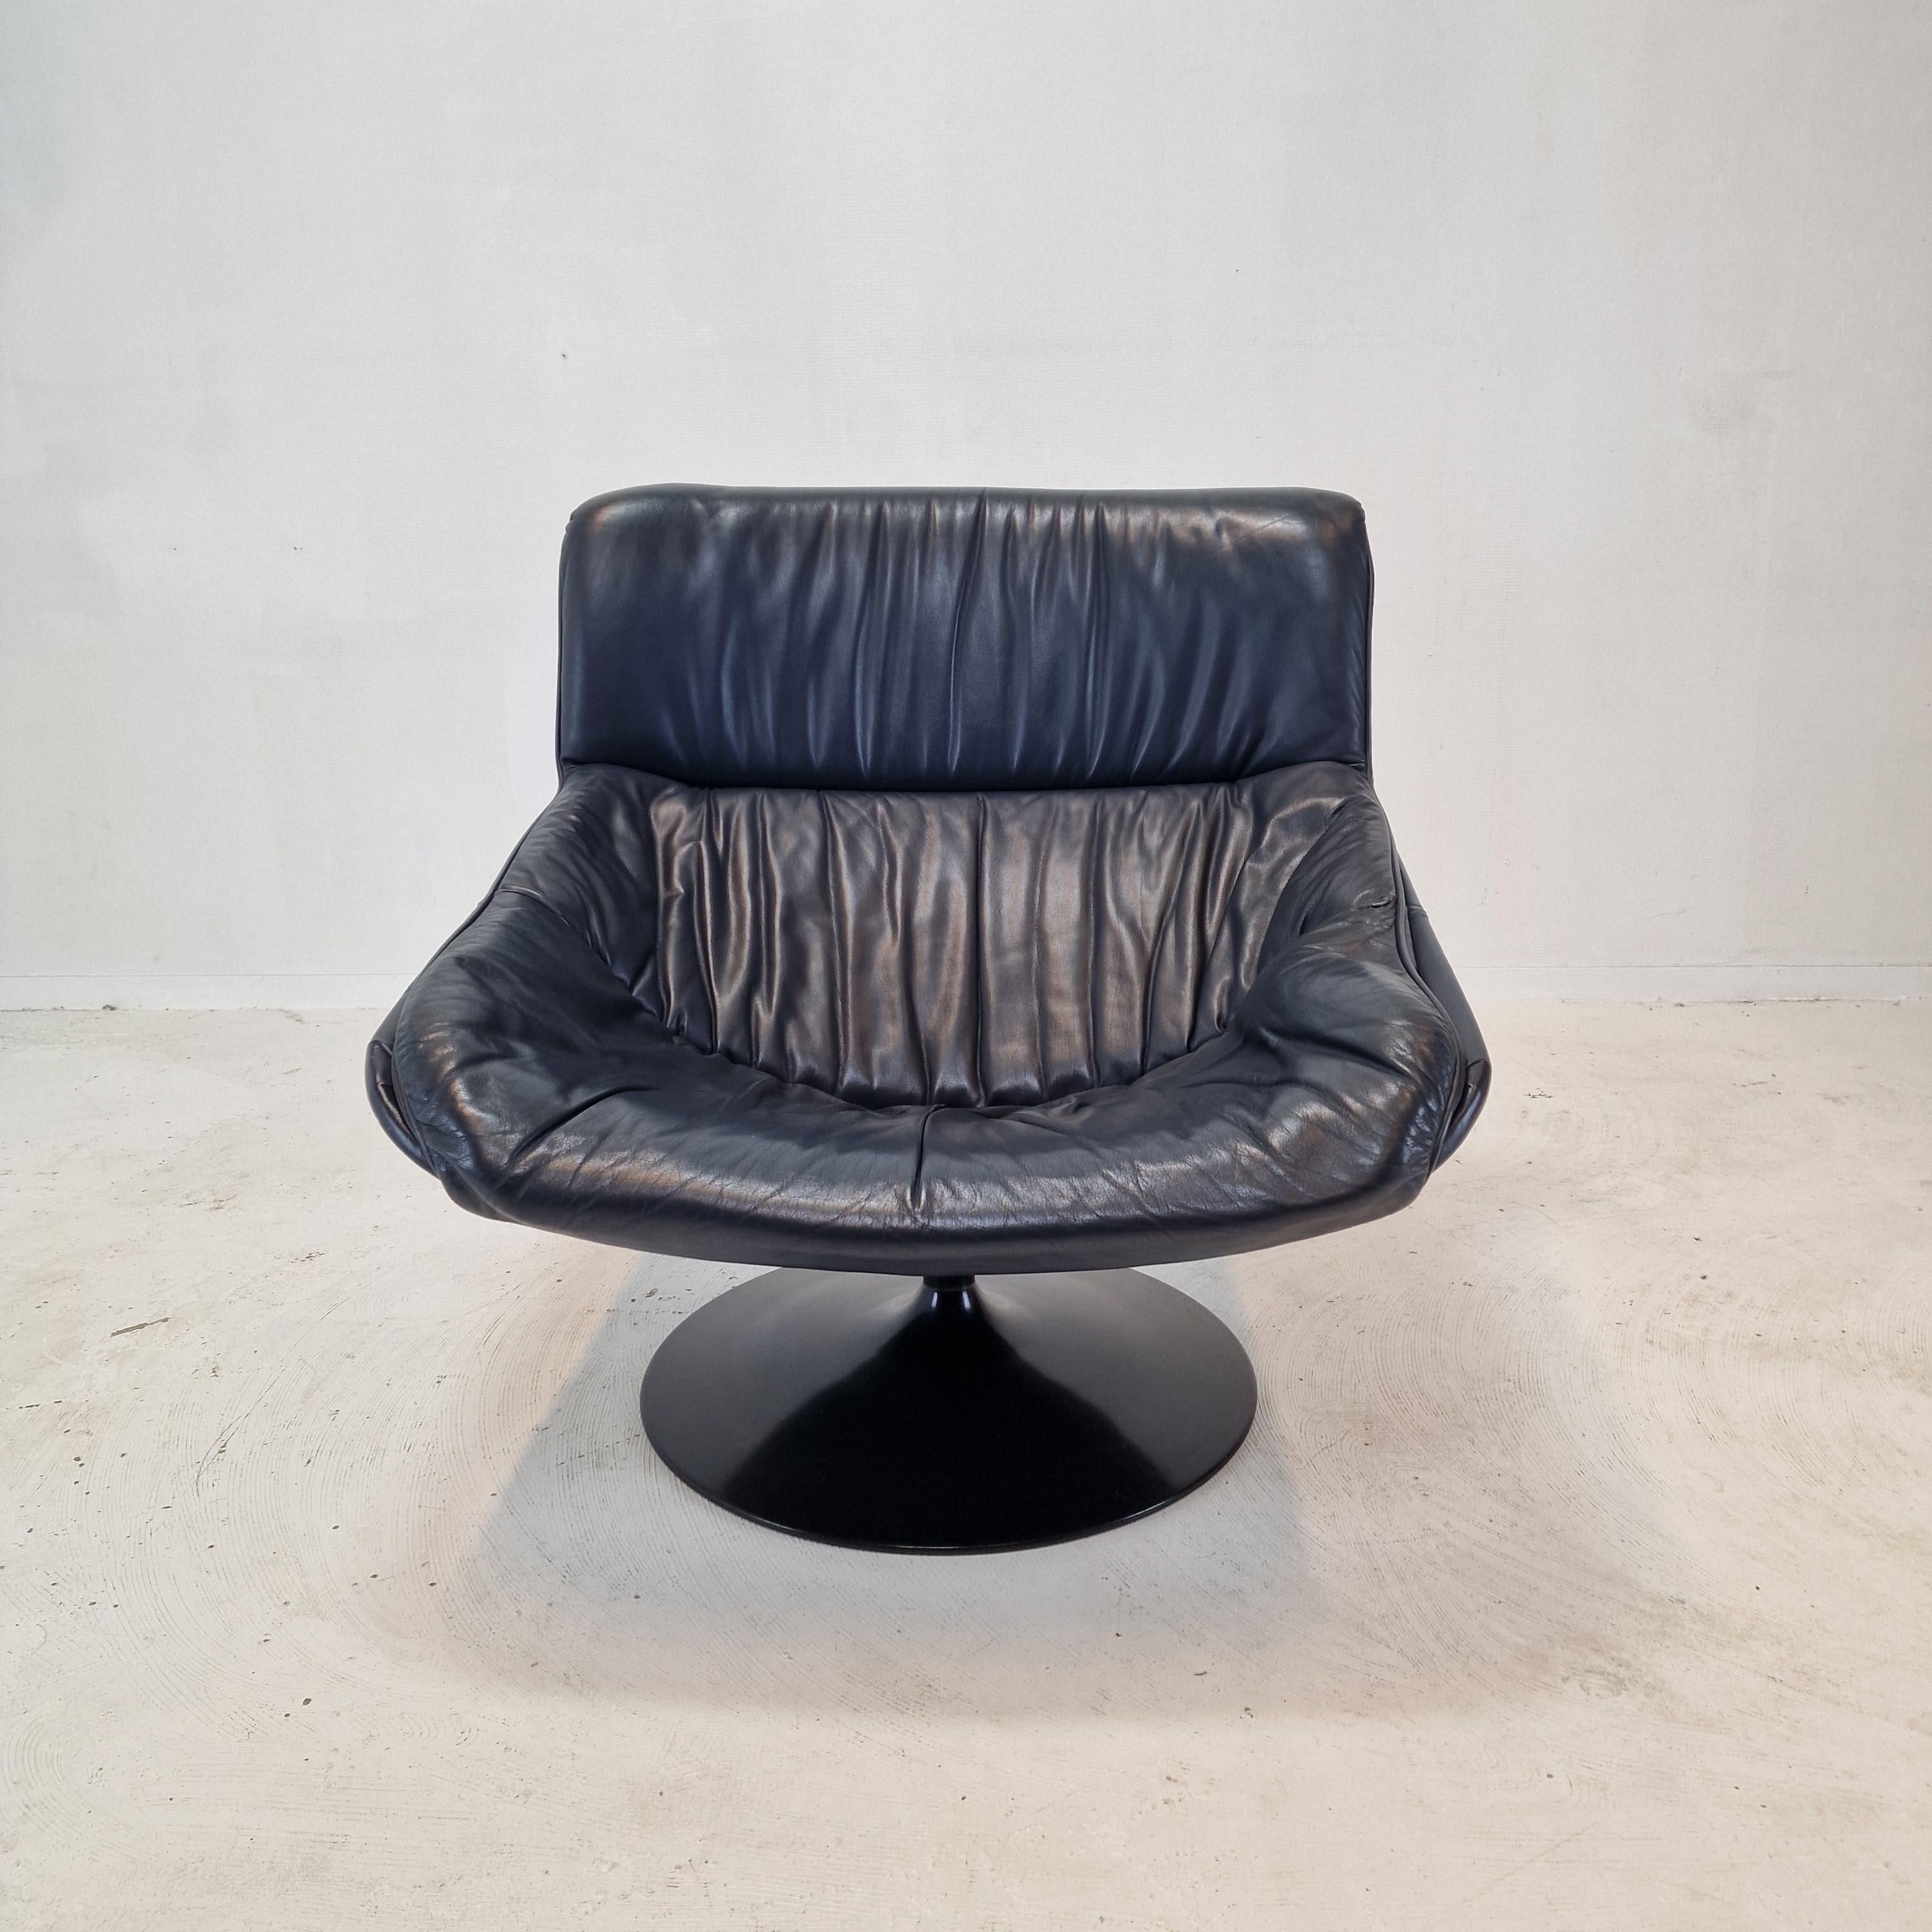 Chaise longue Artifort F518 extrêmement confortable. 
Conçu par le célèbre designer anglais Geoffrey Harcourt dans les années 70. 

Cadre en bois très solide avec un grand pied métallique pivotant.

La chaise est en cuir d'origine de haute qualité,